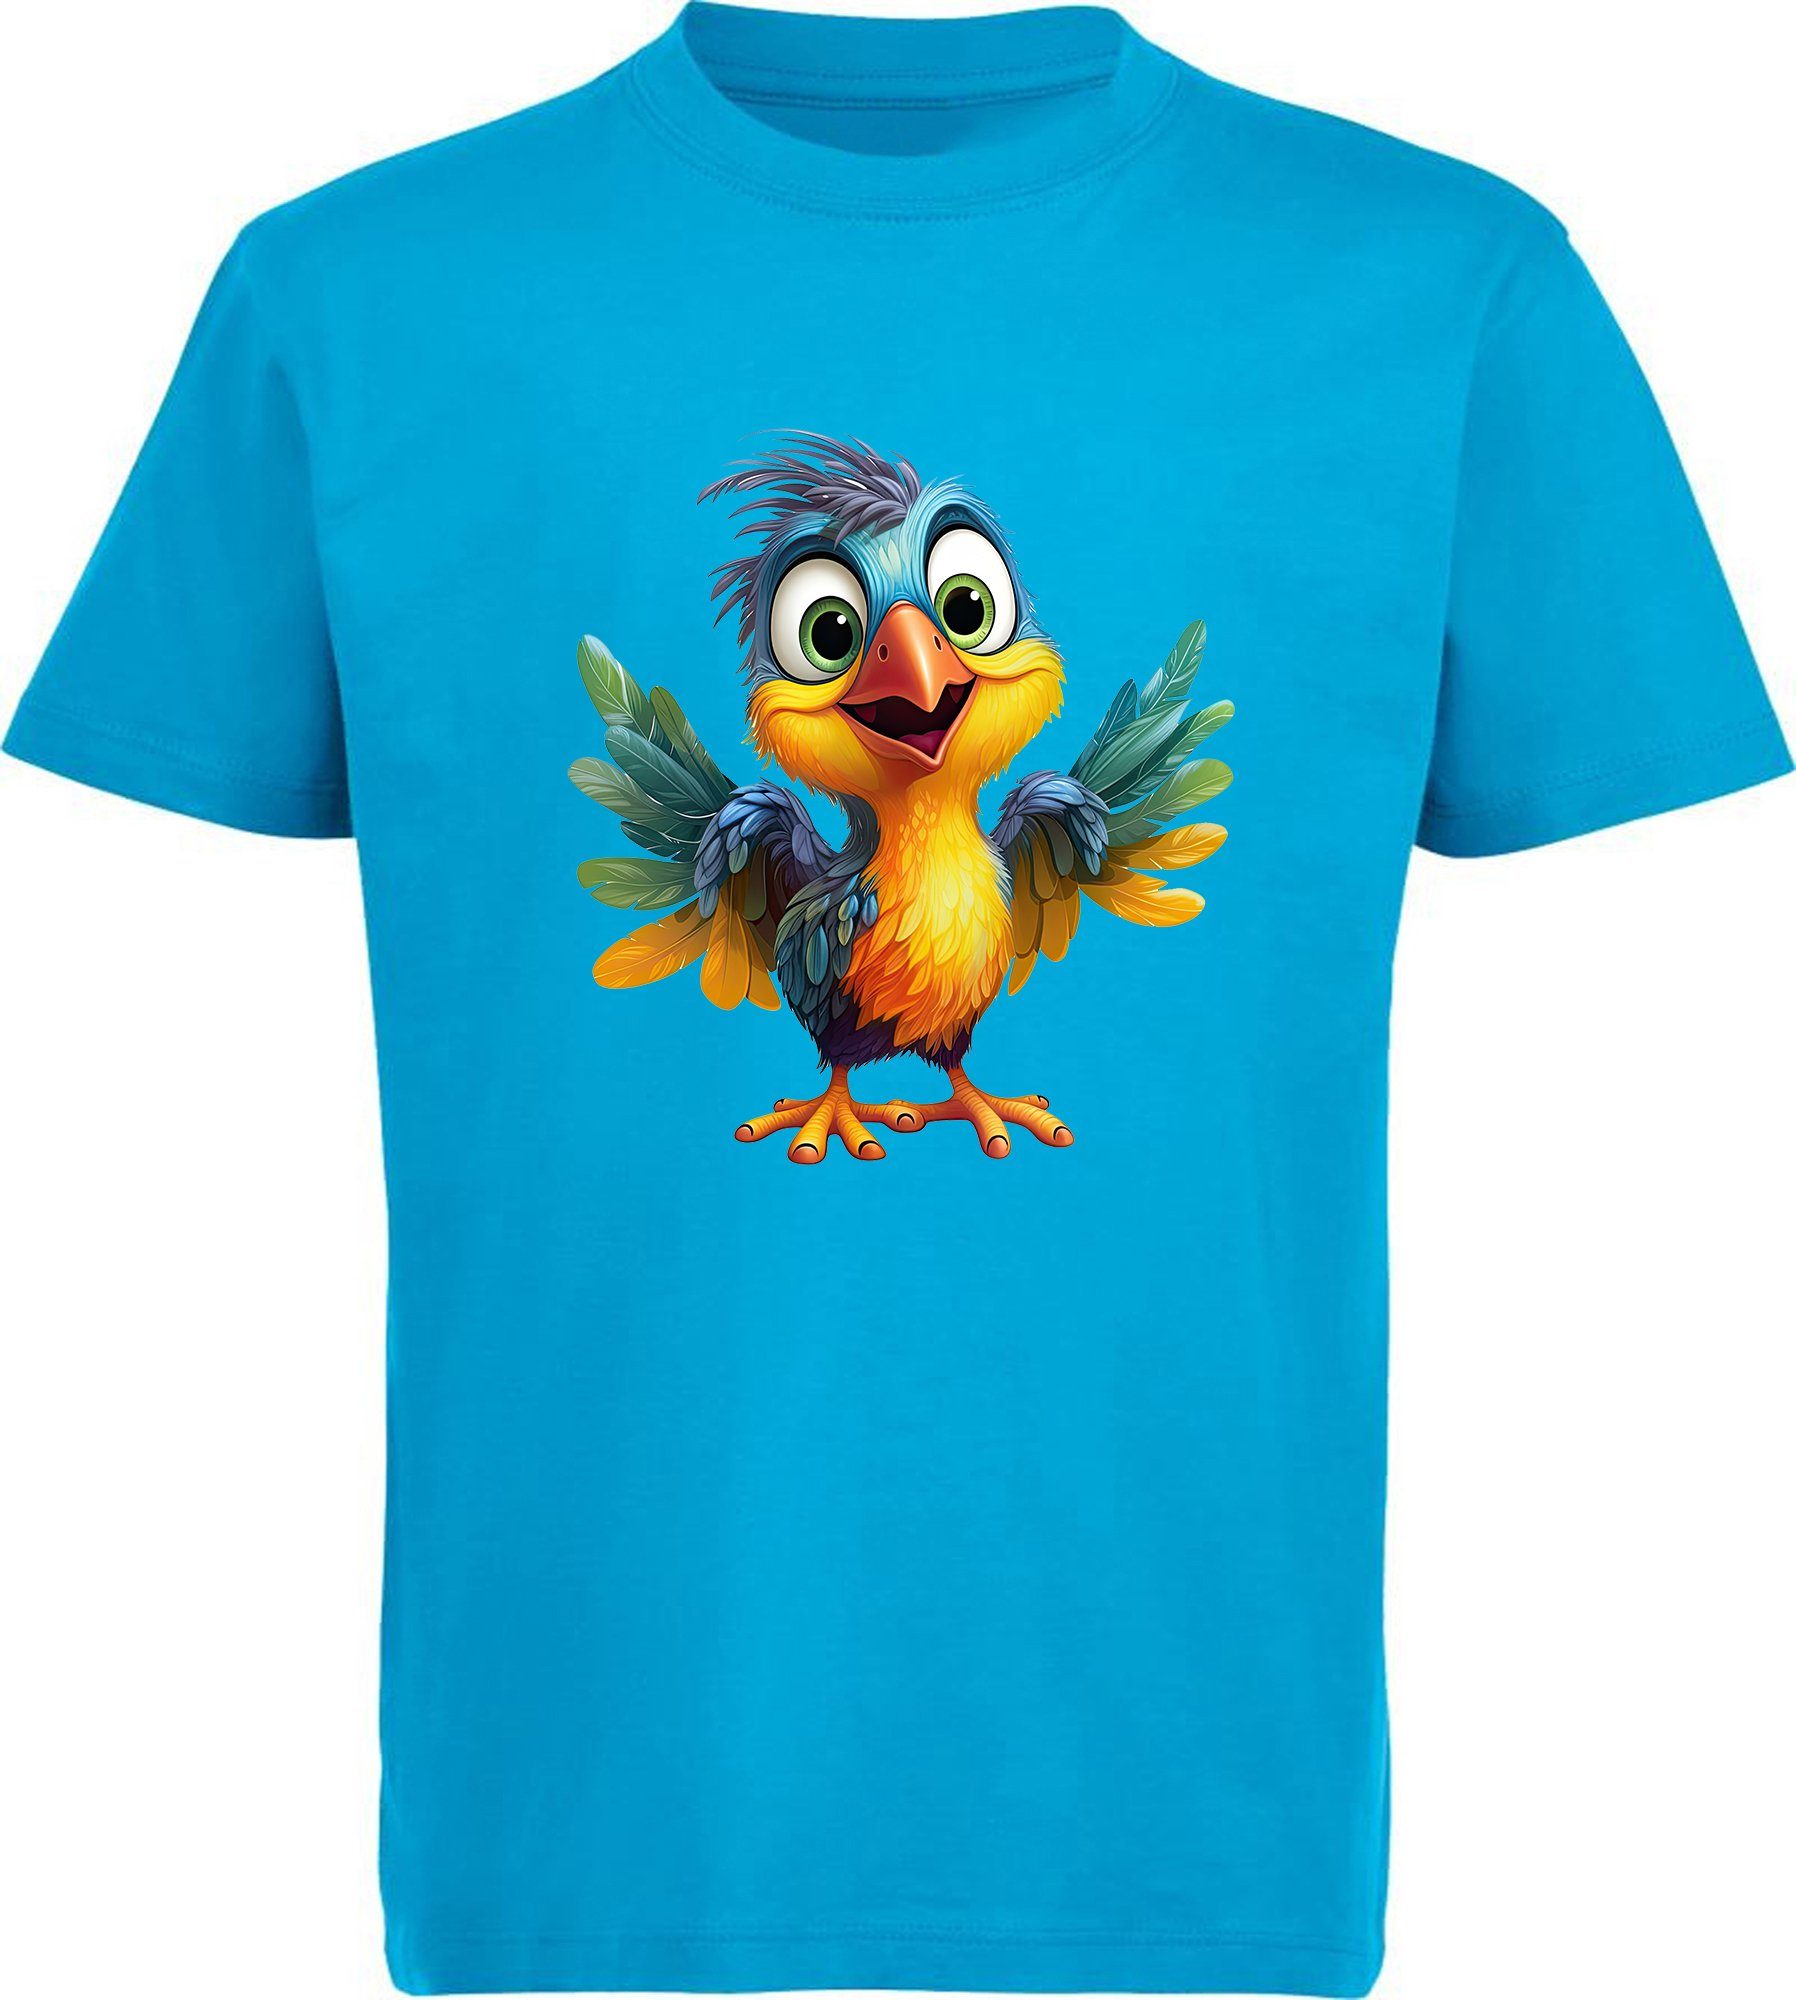 Wildtier Print Aufdruck, i271 - T-Shirt Baby Baumwollshirt Kinder bedruckt MyDesign24 Shirt Vogel mit